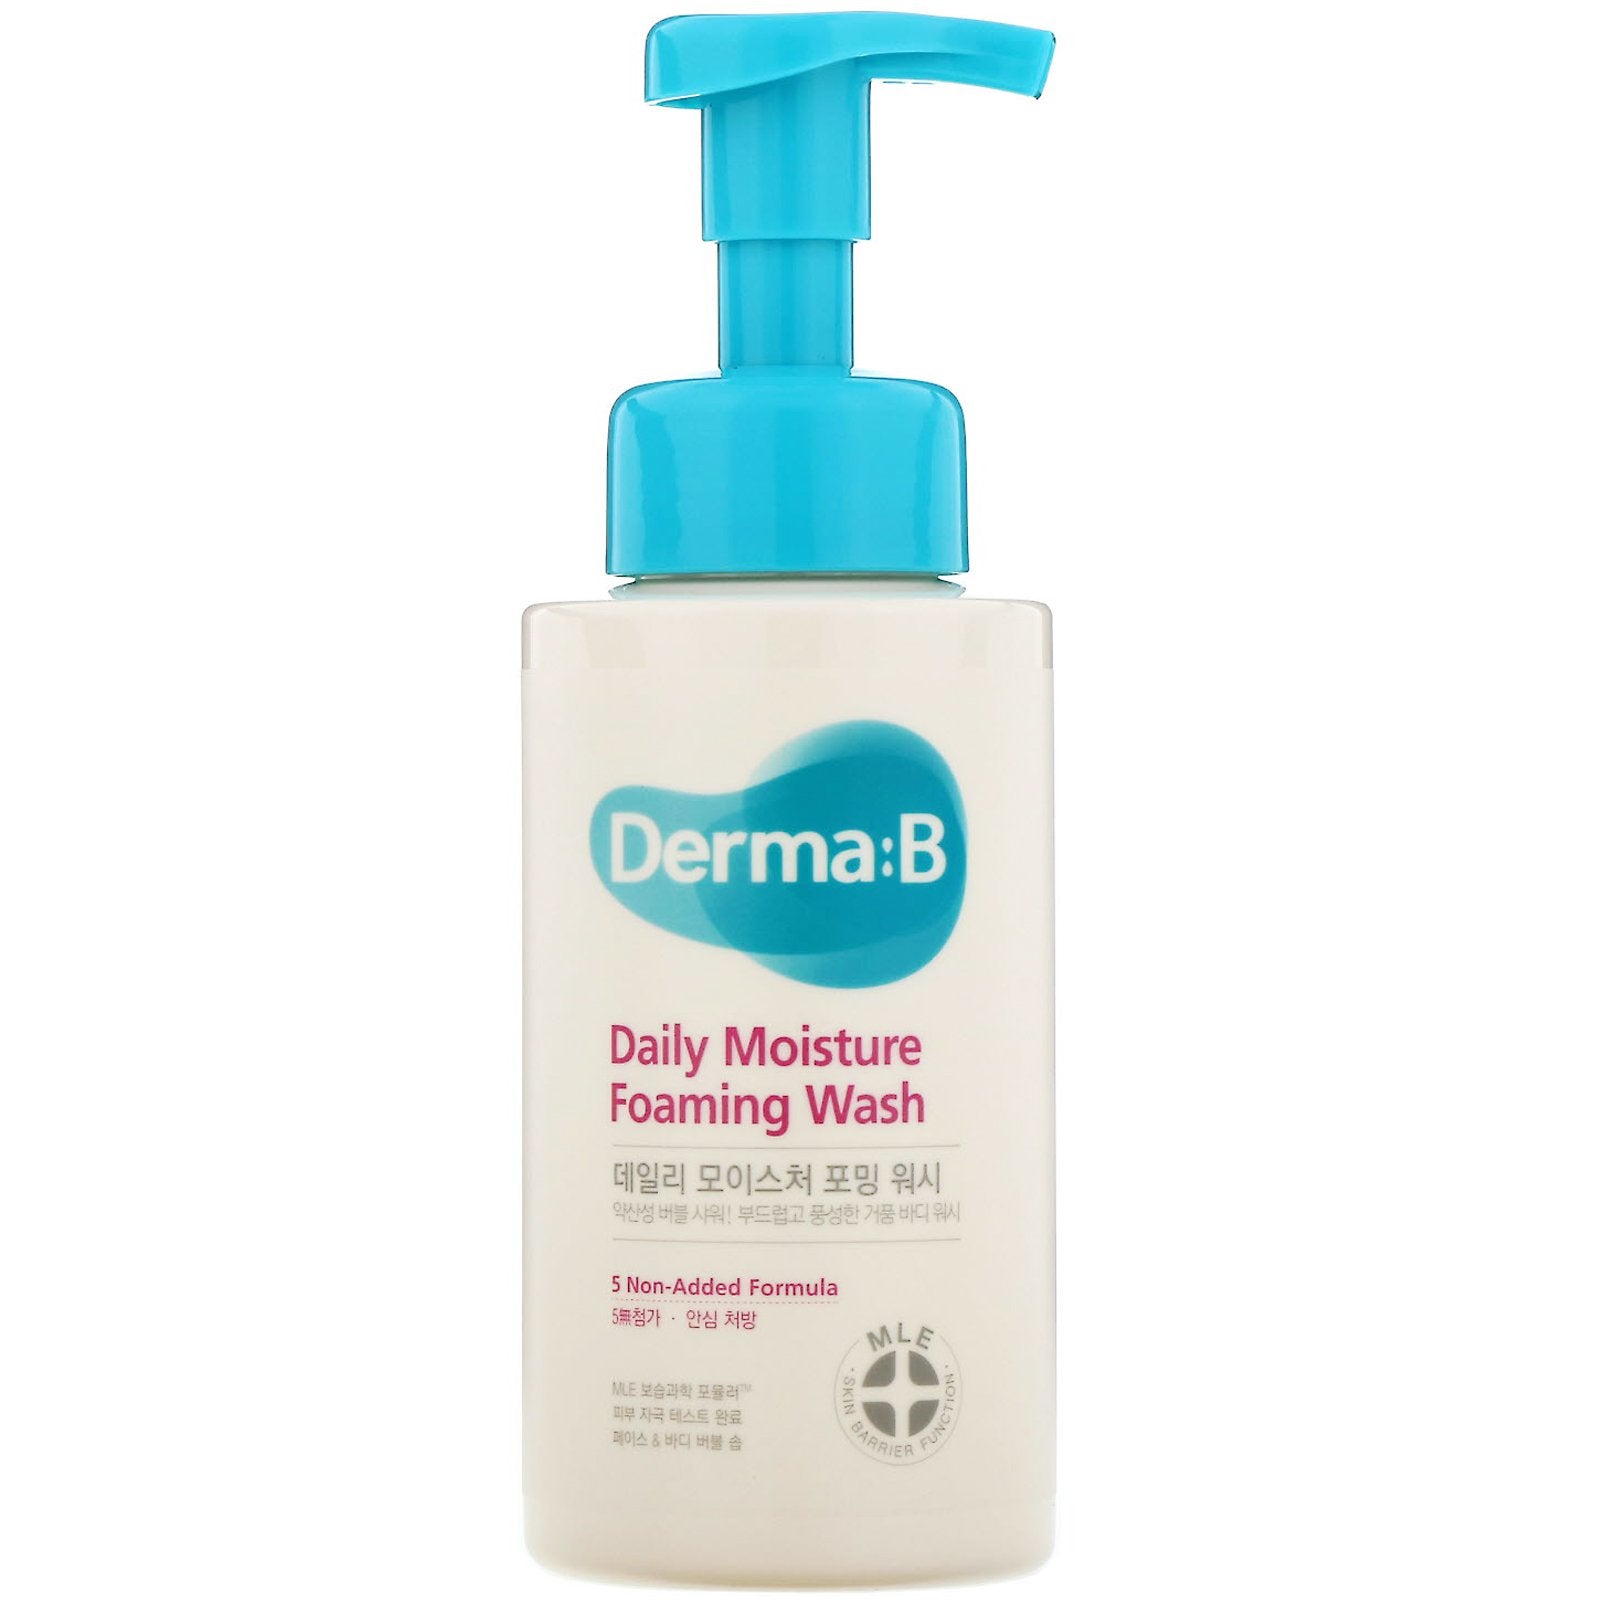 Derma:B, Daily Moisture Foaming Wash, 12.85 fl oz (380 ml)